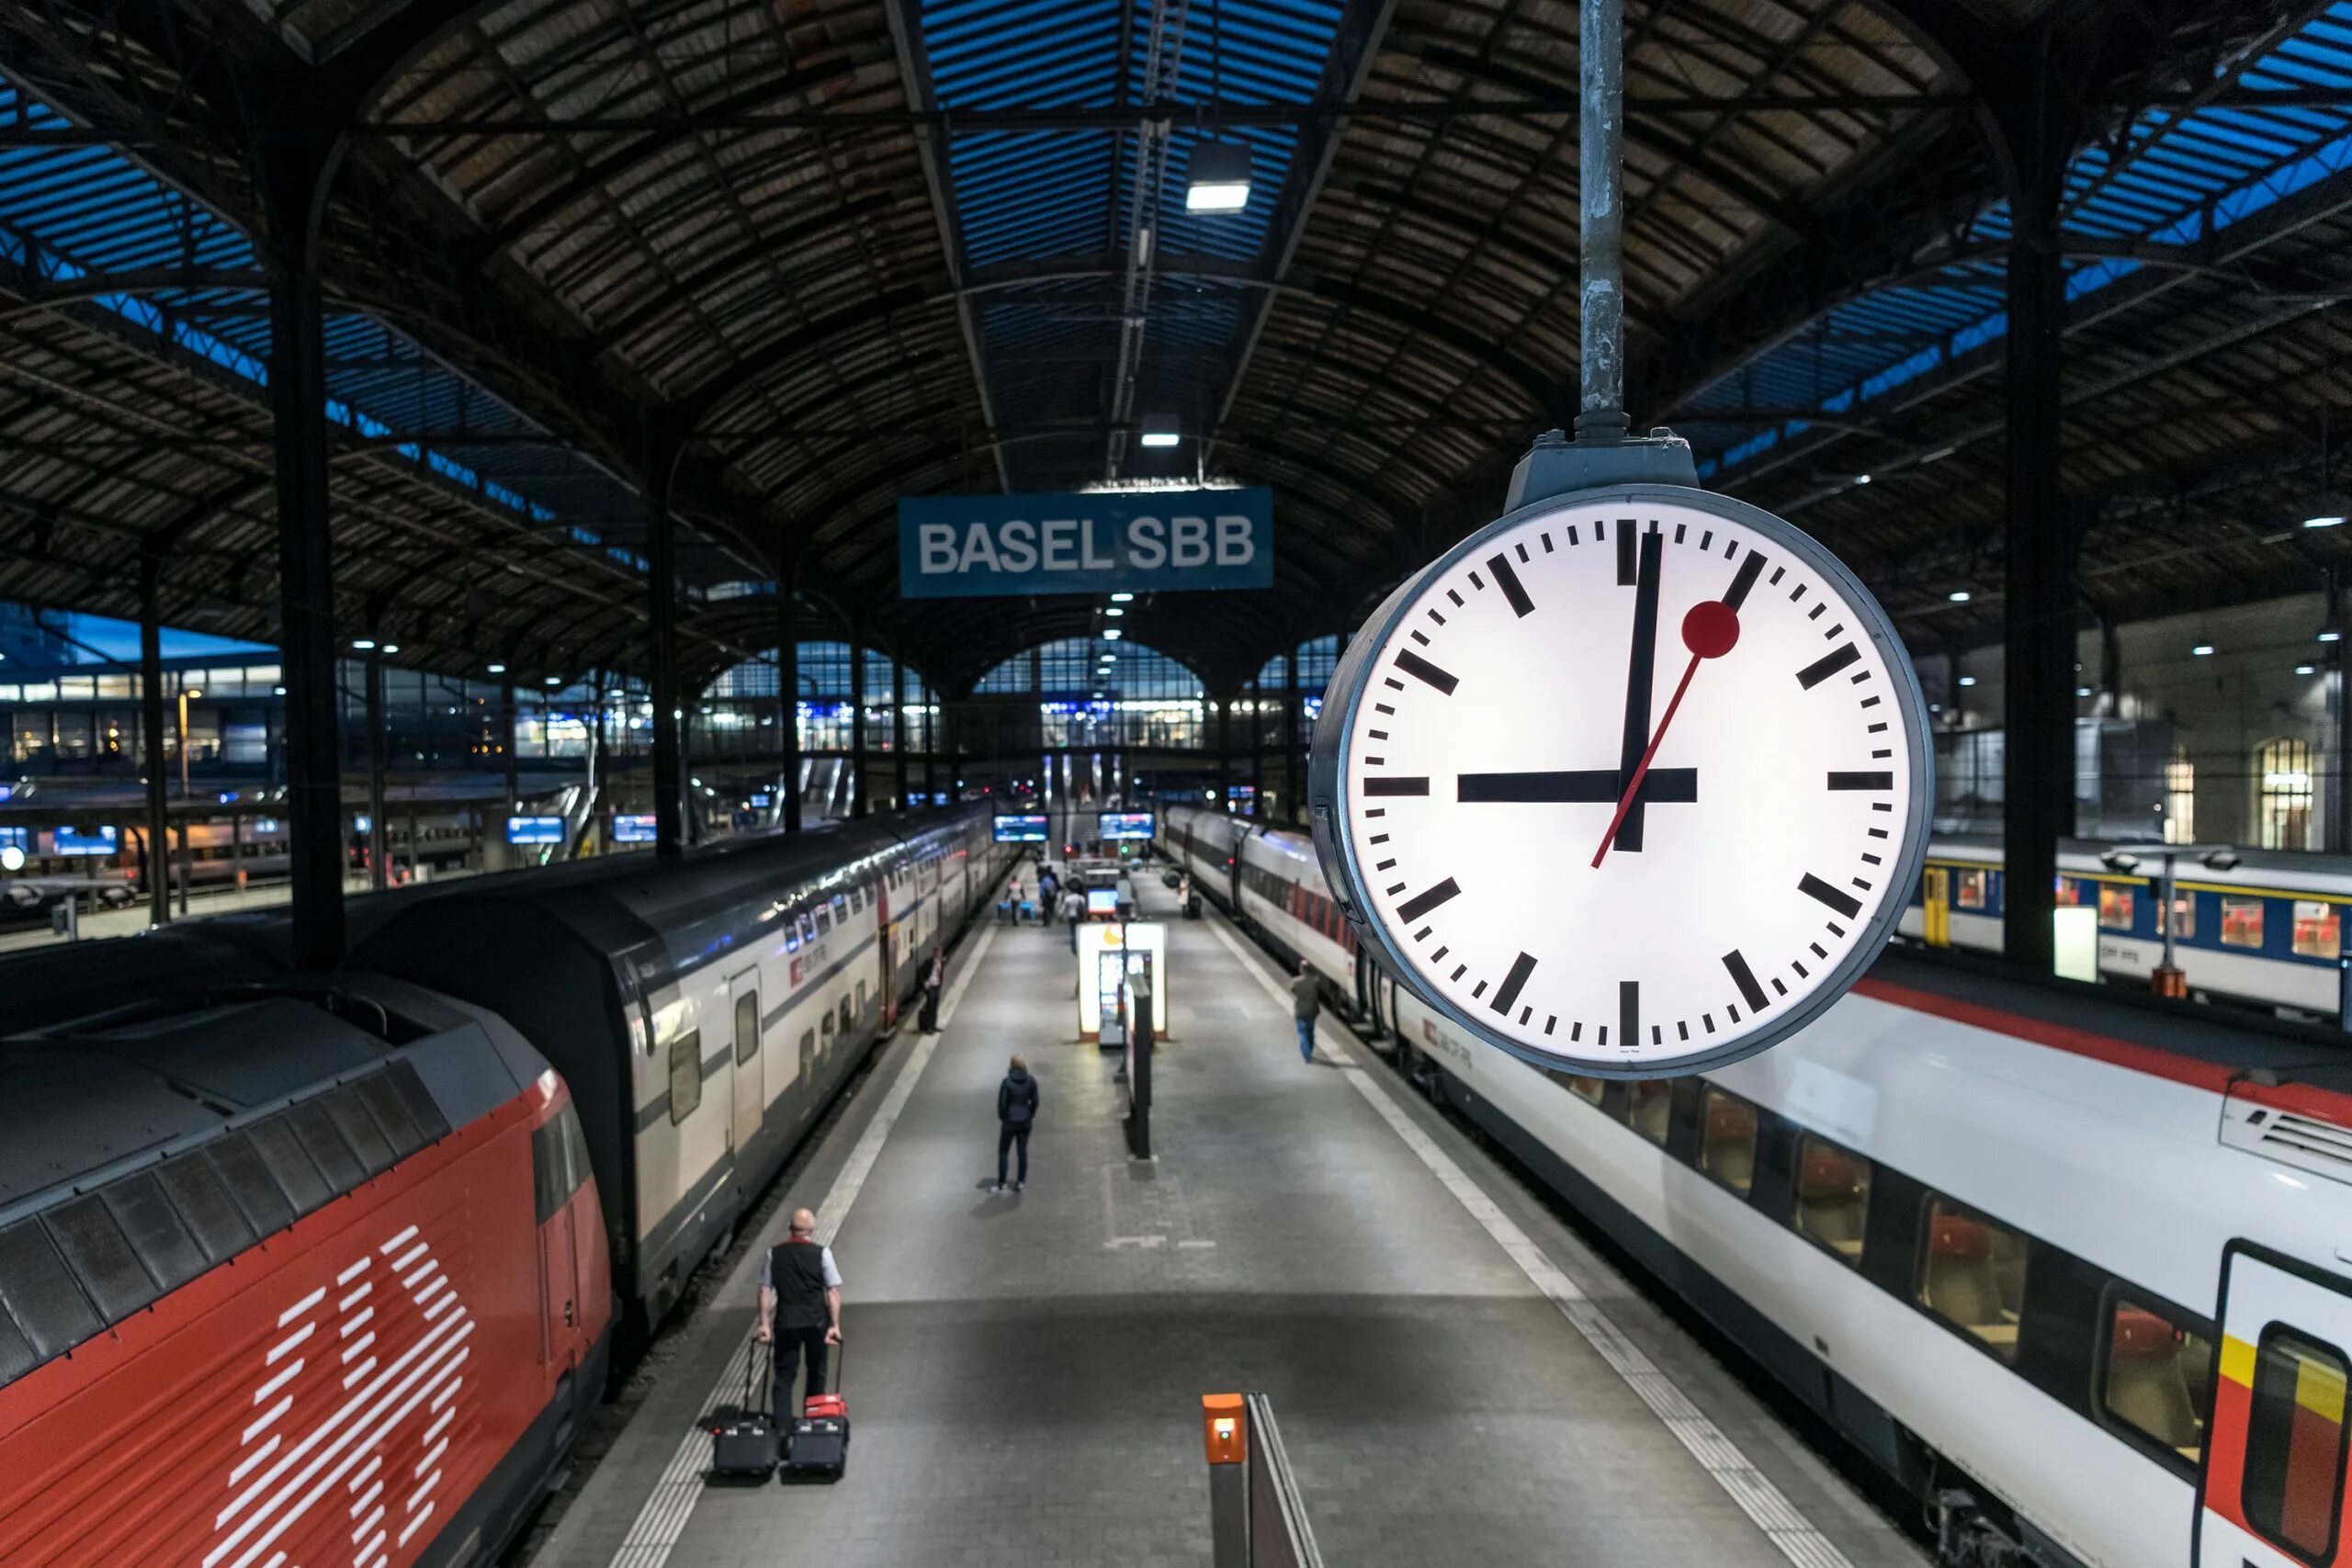 Swiss Railway Clock. Швейцарские Вокзальные часы. Швейцарские часы на вокзале. Часы Вокзальные в Швейцарии. 16 часов на поезде